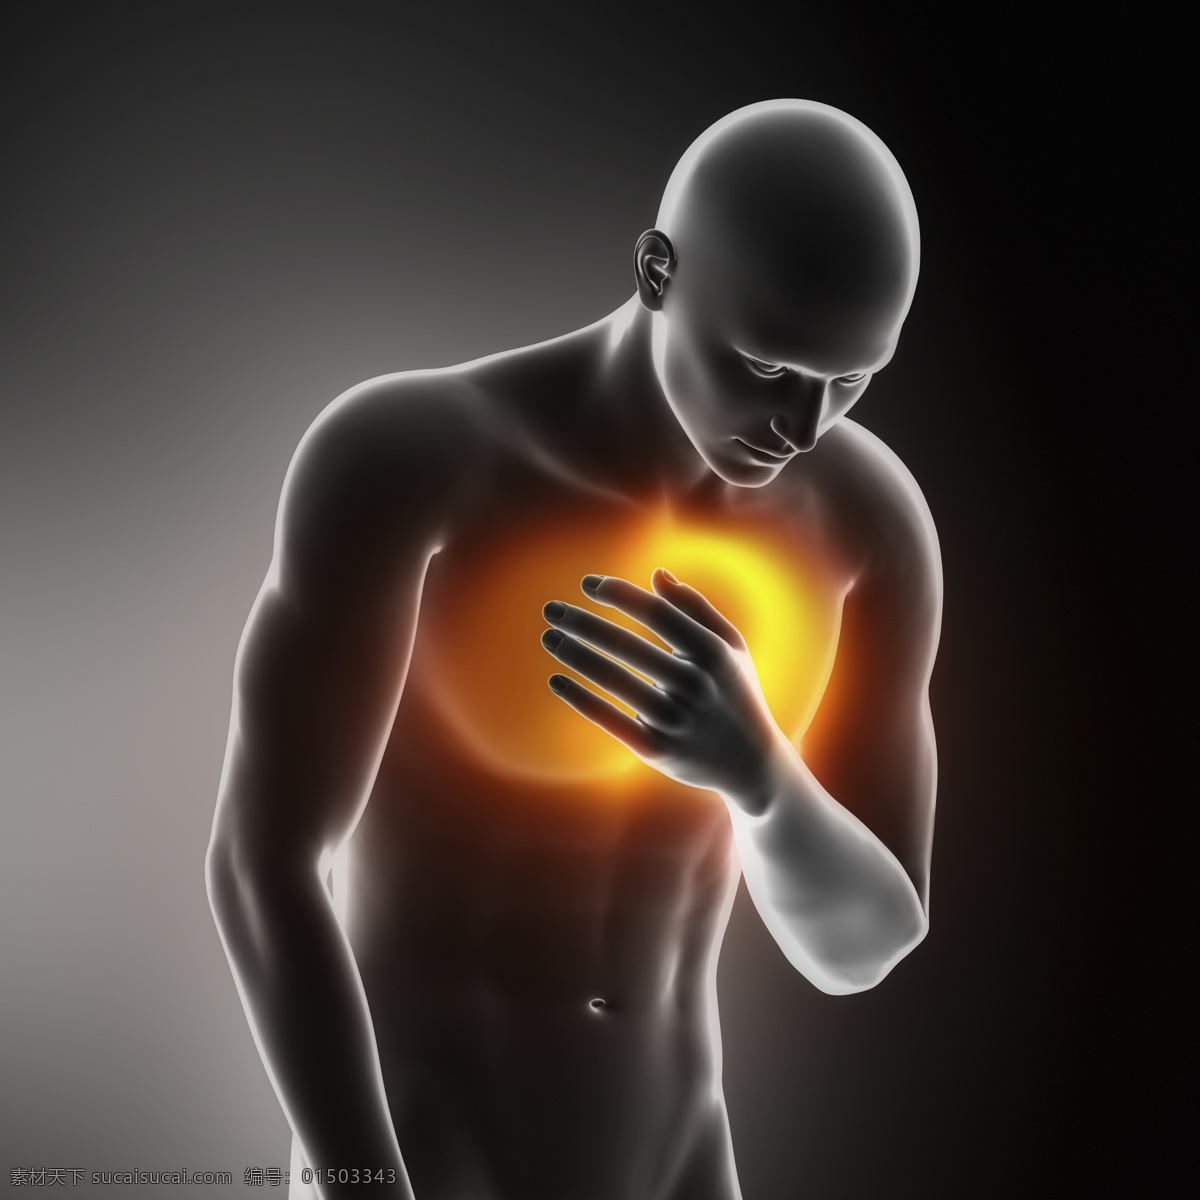 胸口 疼痛 男性 胸口疼痛 胸闷 男性人体器官 医疗科学 医学 人体器官图 人物图片